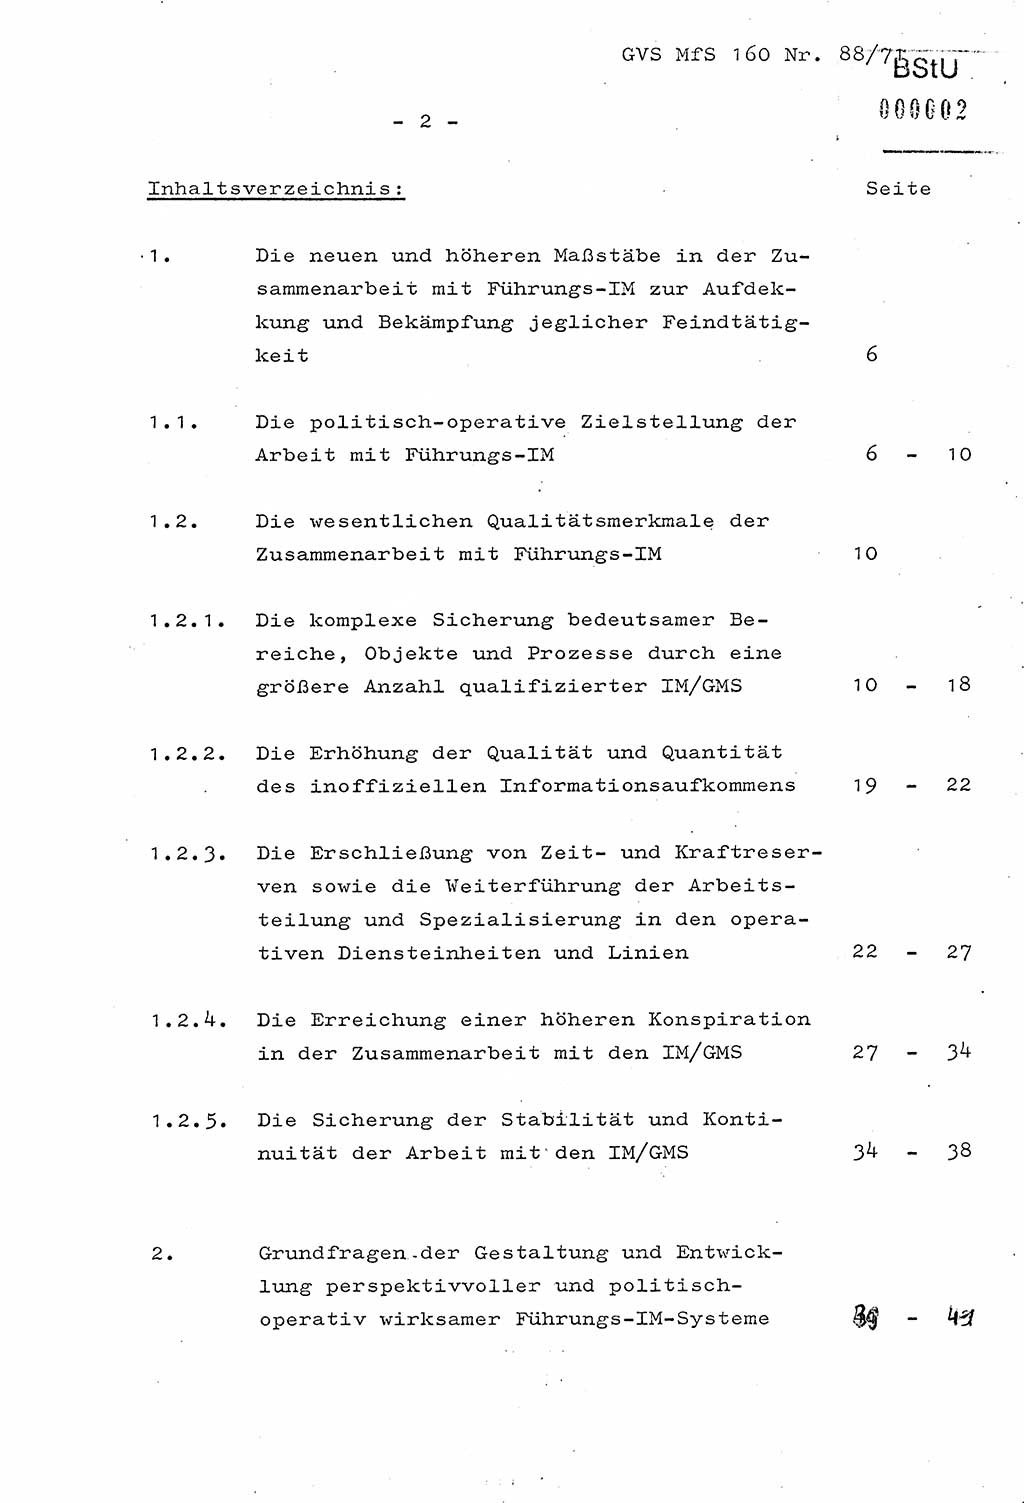 Dissertation Oberstleutnant Josef Schwarz (BV Schwerin), Major Fritz Amm (JHS), Hauptmann Peter Gräßler (JHS), Ministerium für Staatssicherheit (MfS) [Deutsche Demokratische Republik (DDR)], Juristische Hochschule (JHS), Geheime Verschlußsache (GVS) 160-88/71, Potsdam 1972, Seite 2 (Diss. MfS DDR JHS GVS 160-88/71 1972, S. 2)